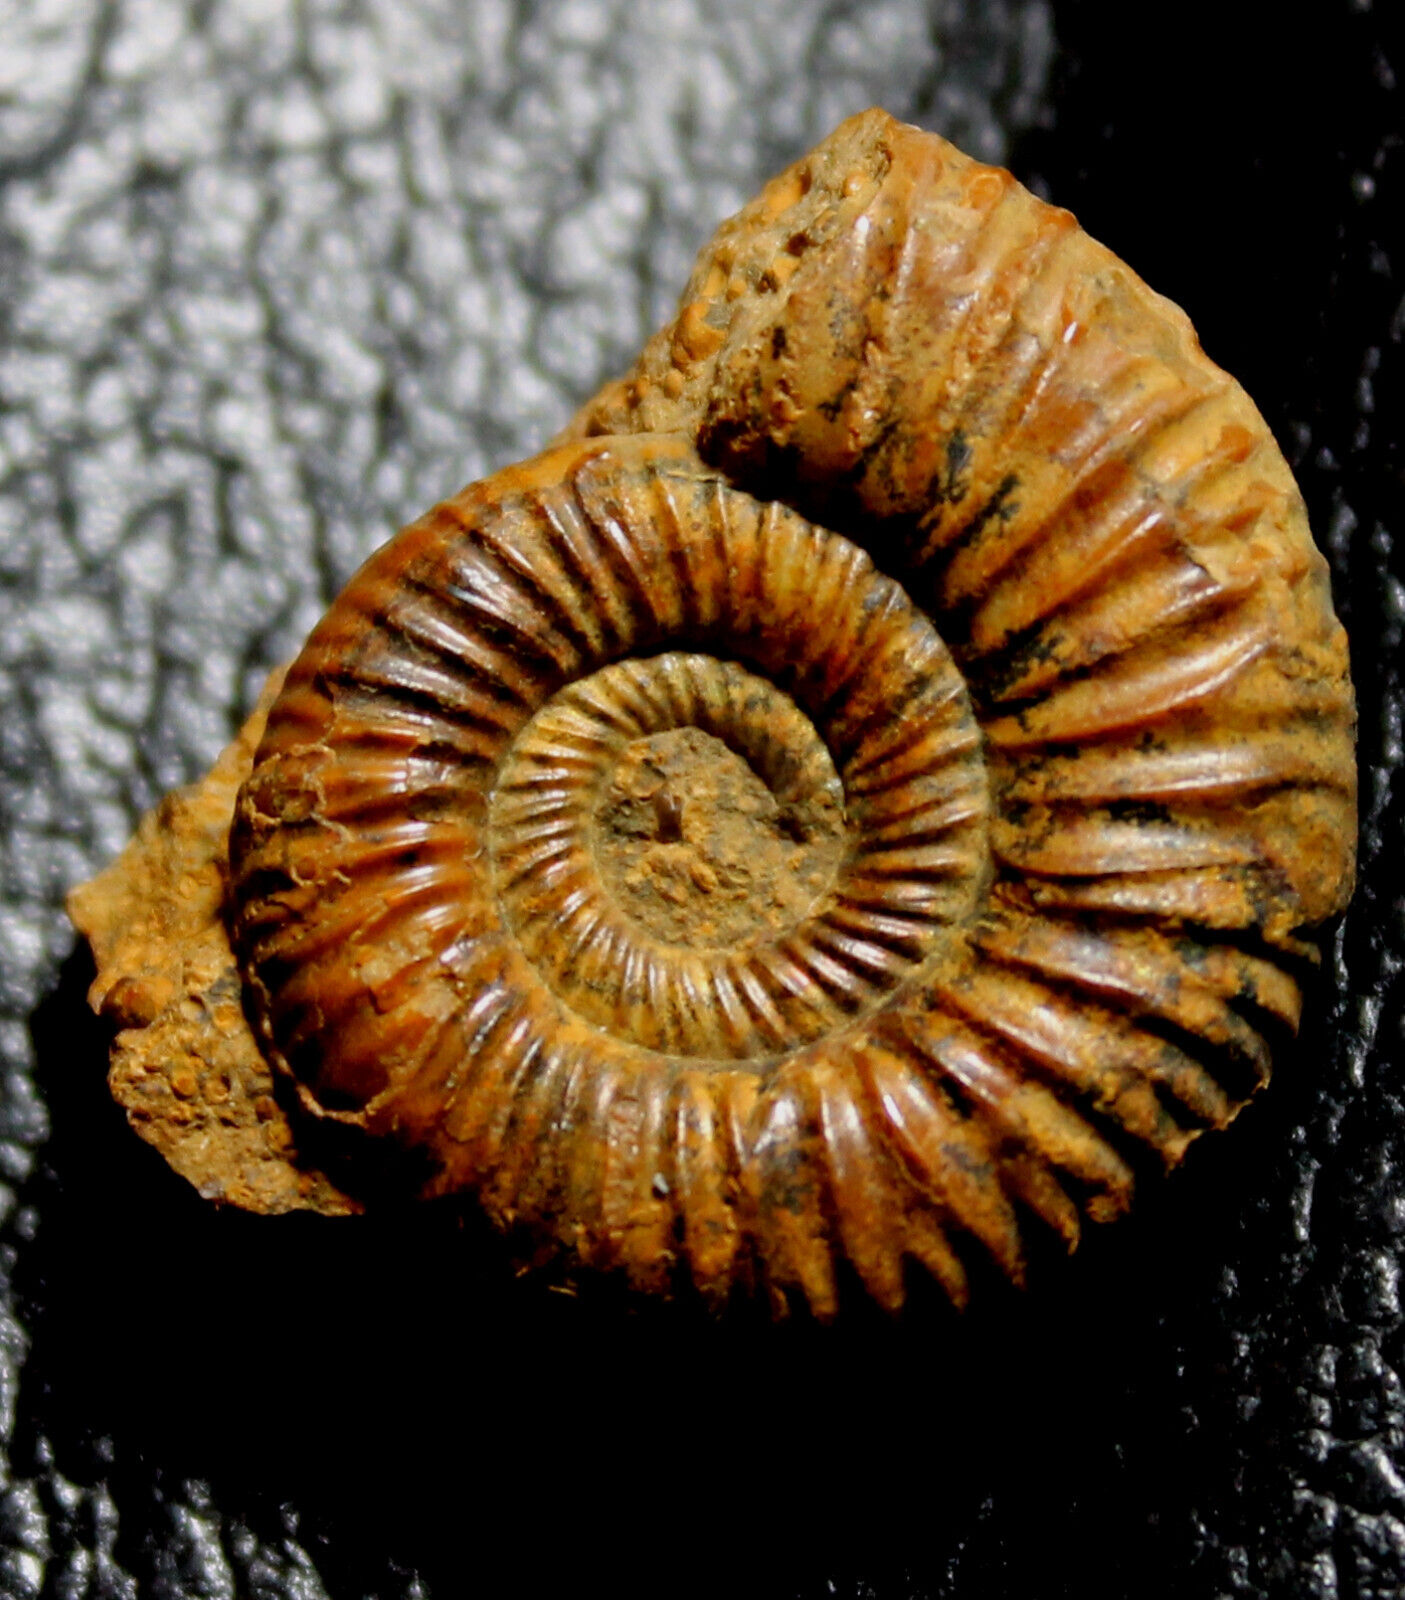 Nice preserved Jurassic, Callovian ammonite - Perisphinctidae